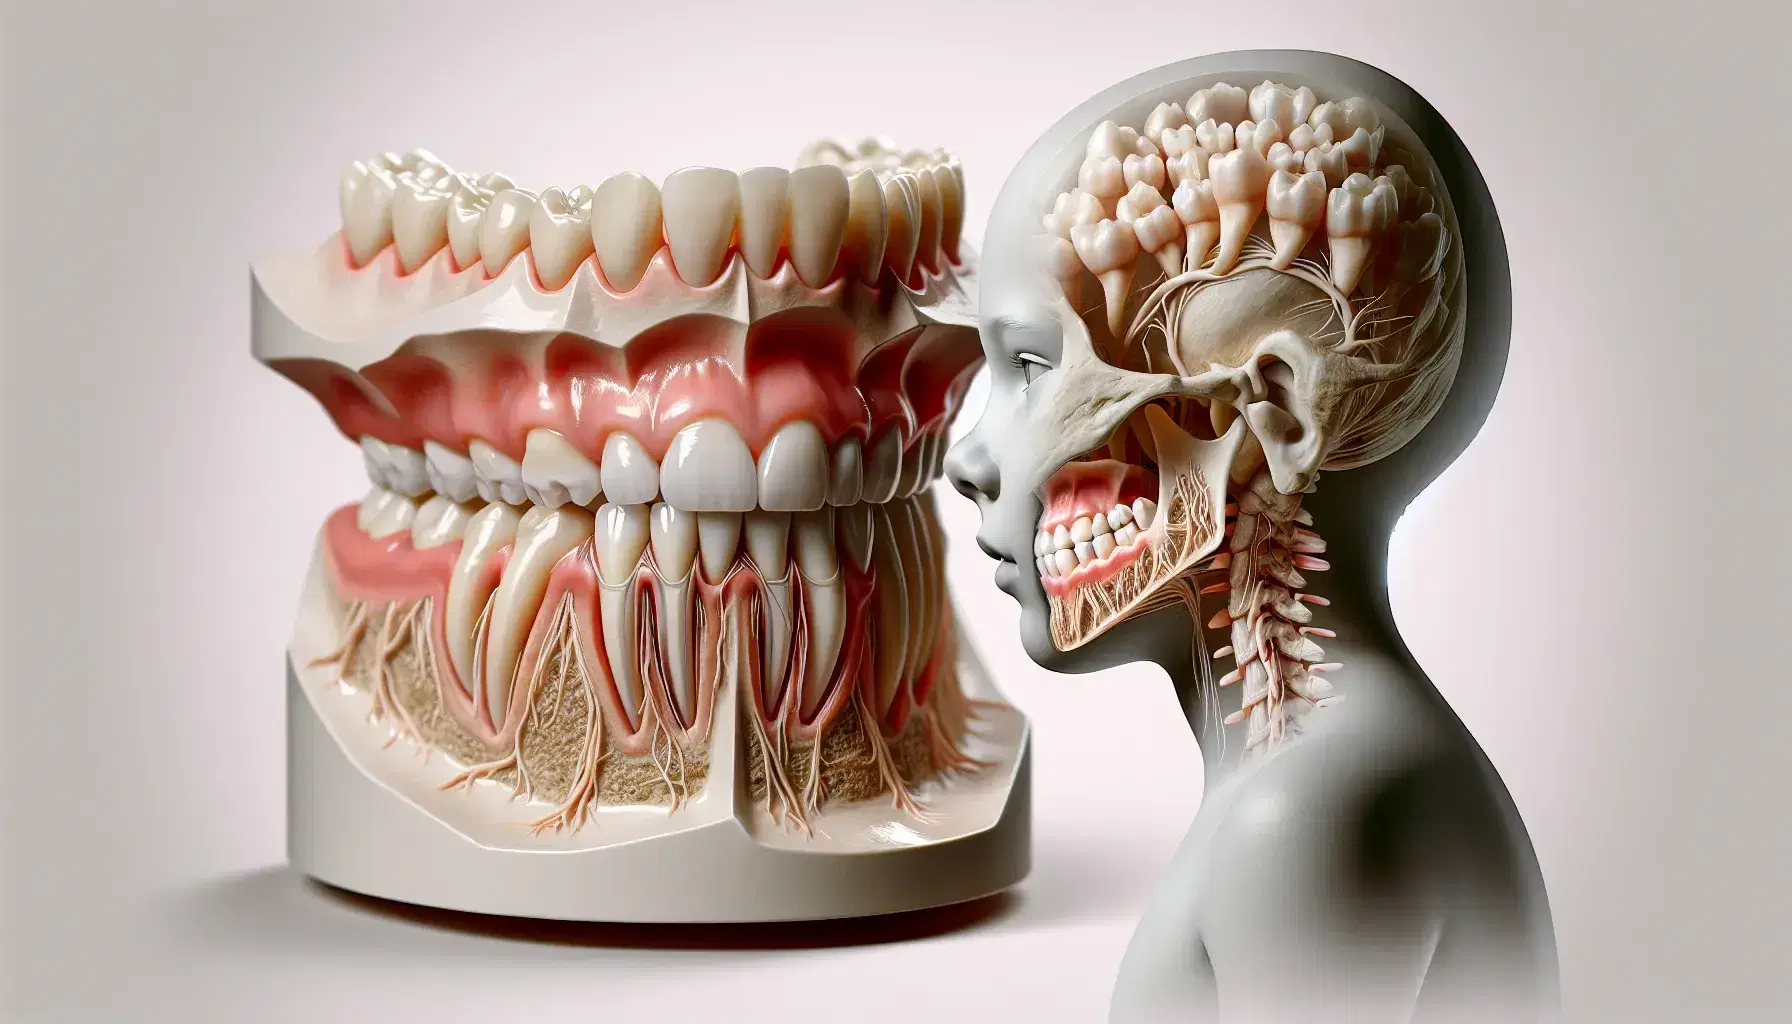 Modelo tridimensional de mandíbula inferior semi-transparente mostrando dientes en desarrollo y erupción, con raíces y nervios visibles.